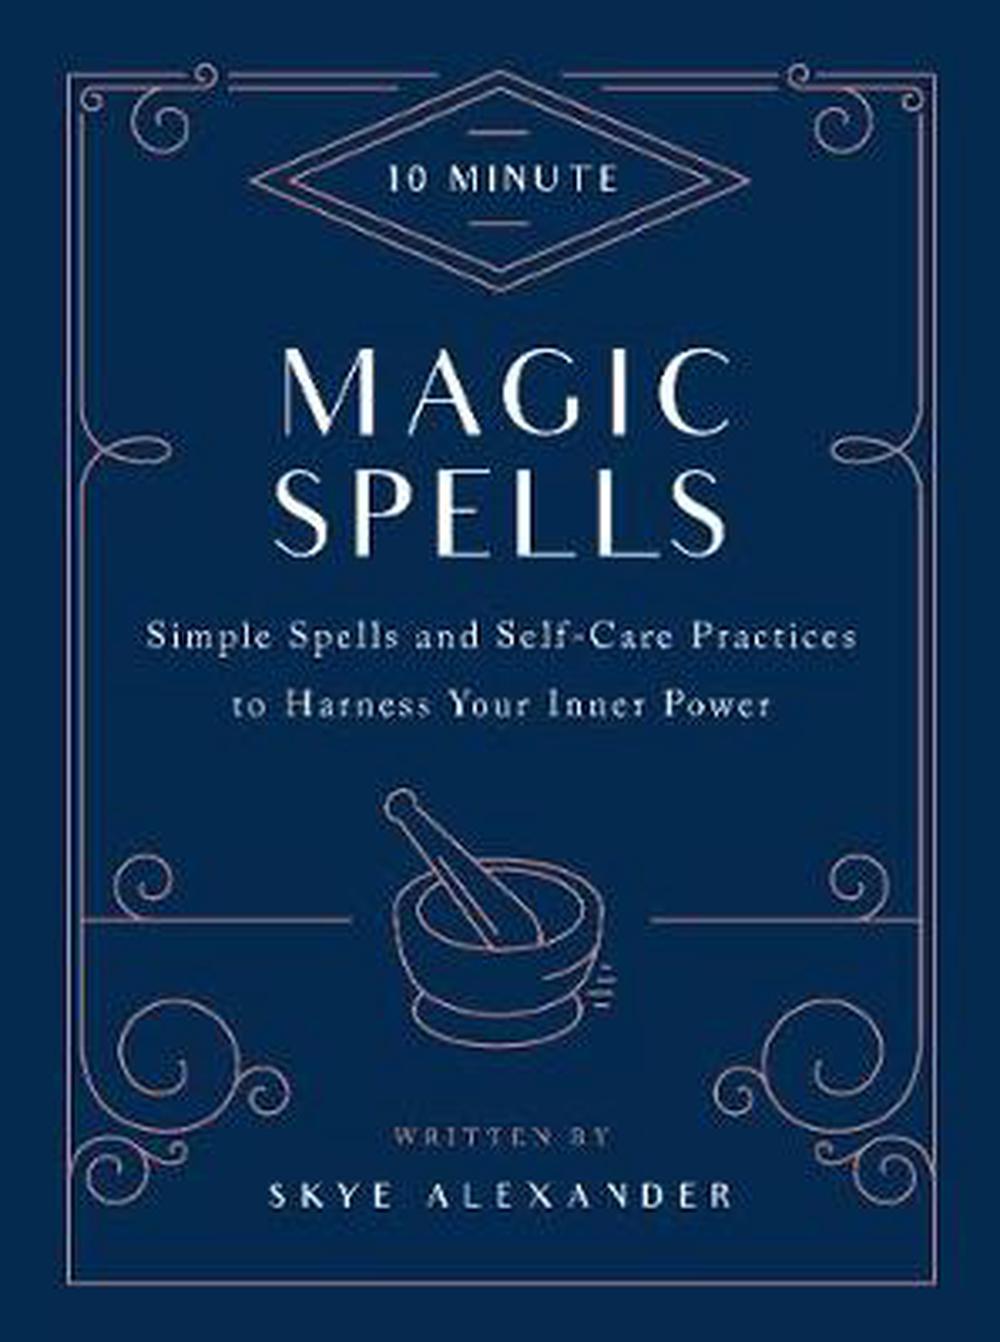 10 Minute Magic Spells - The Spirit of Life